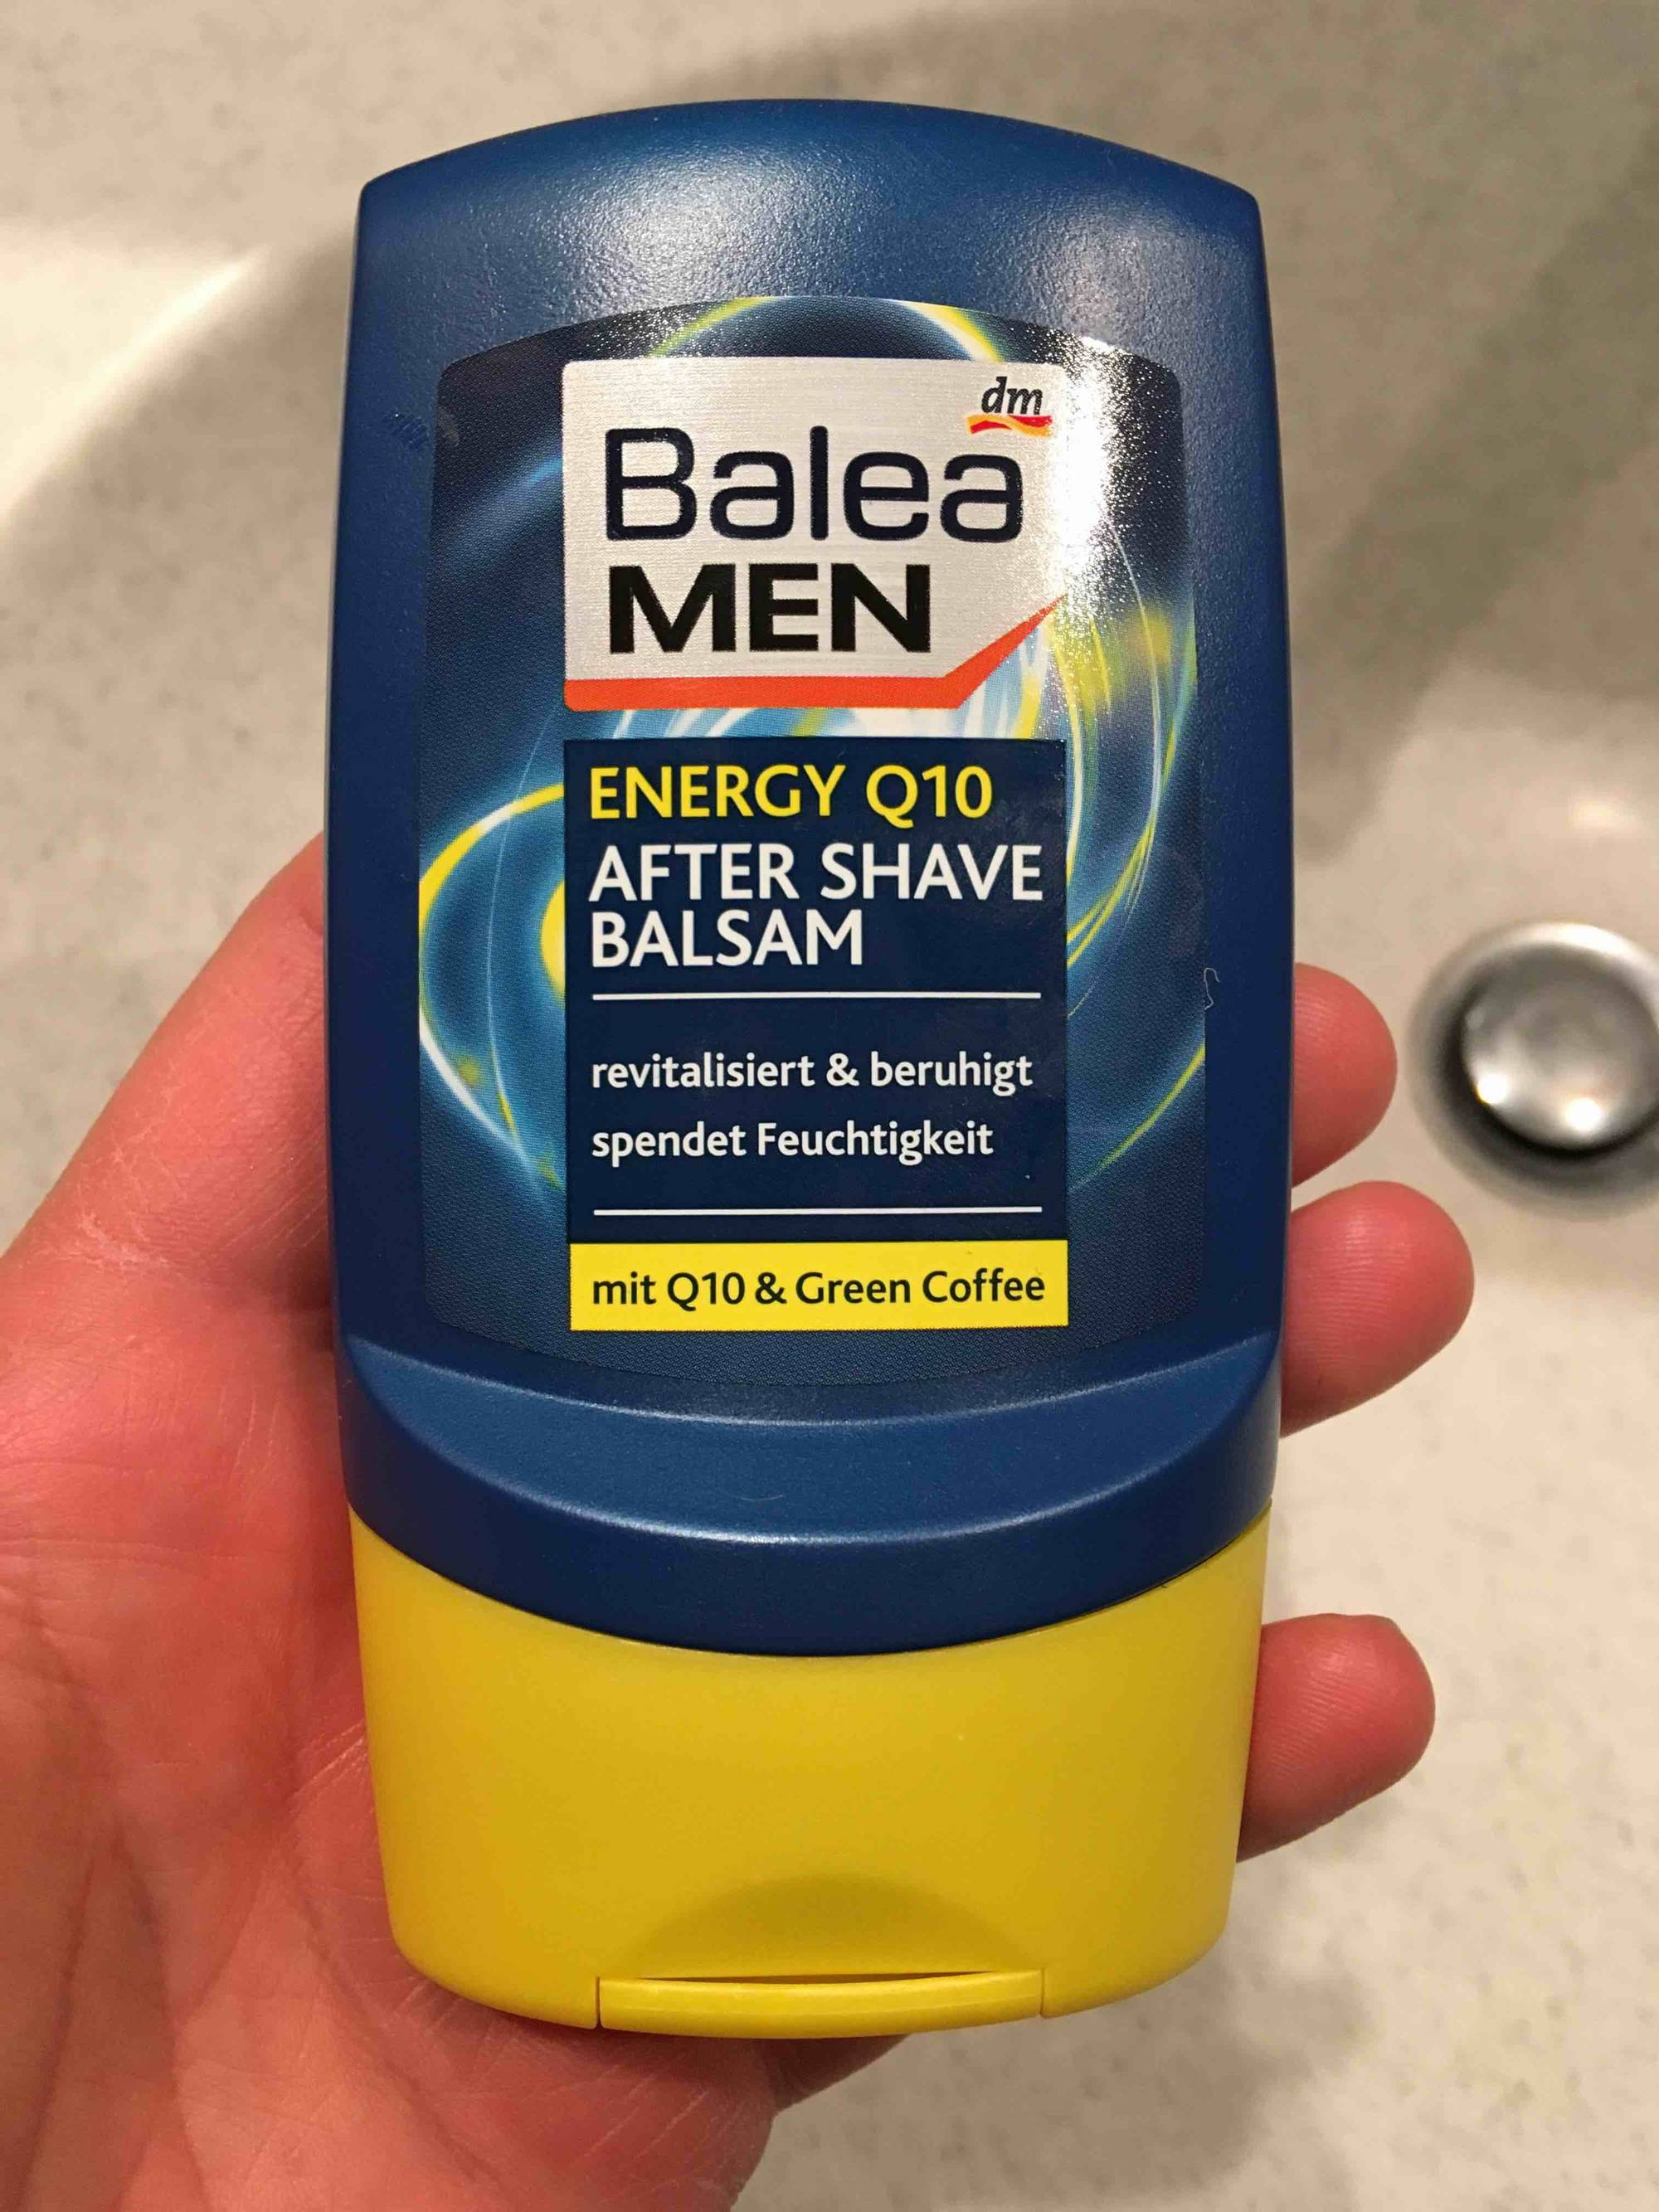 DM - Balea men - Energy Q10 after shave balsam